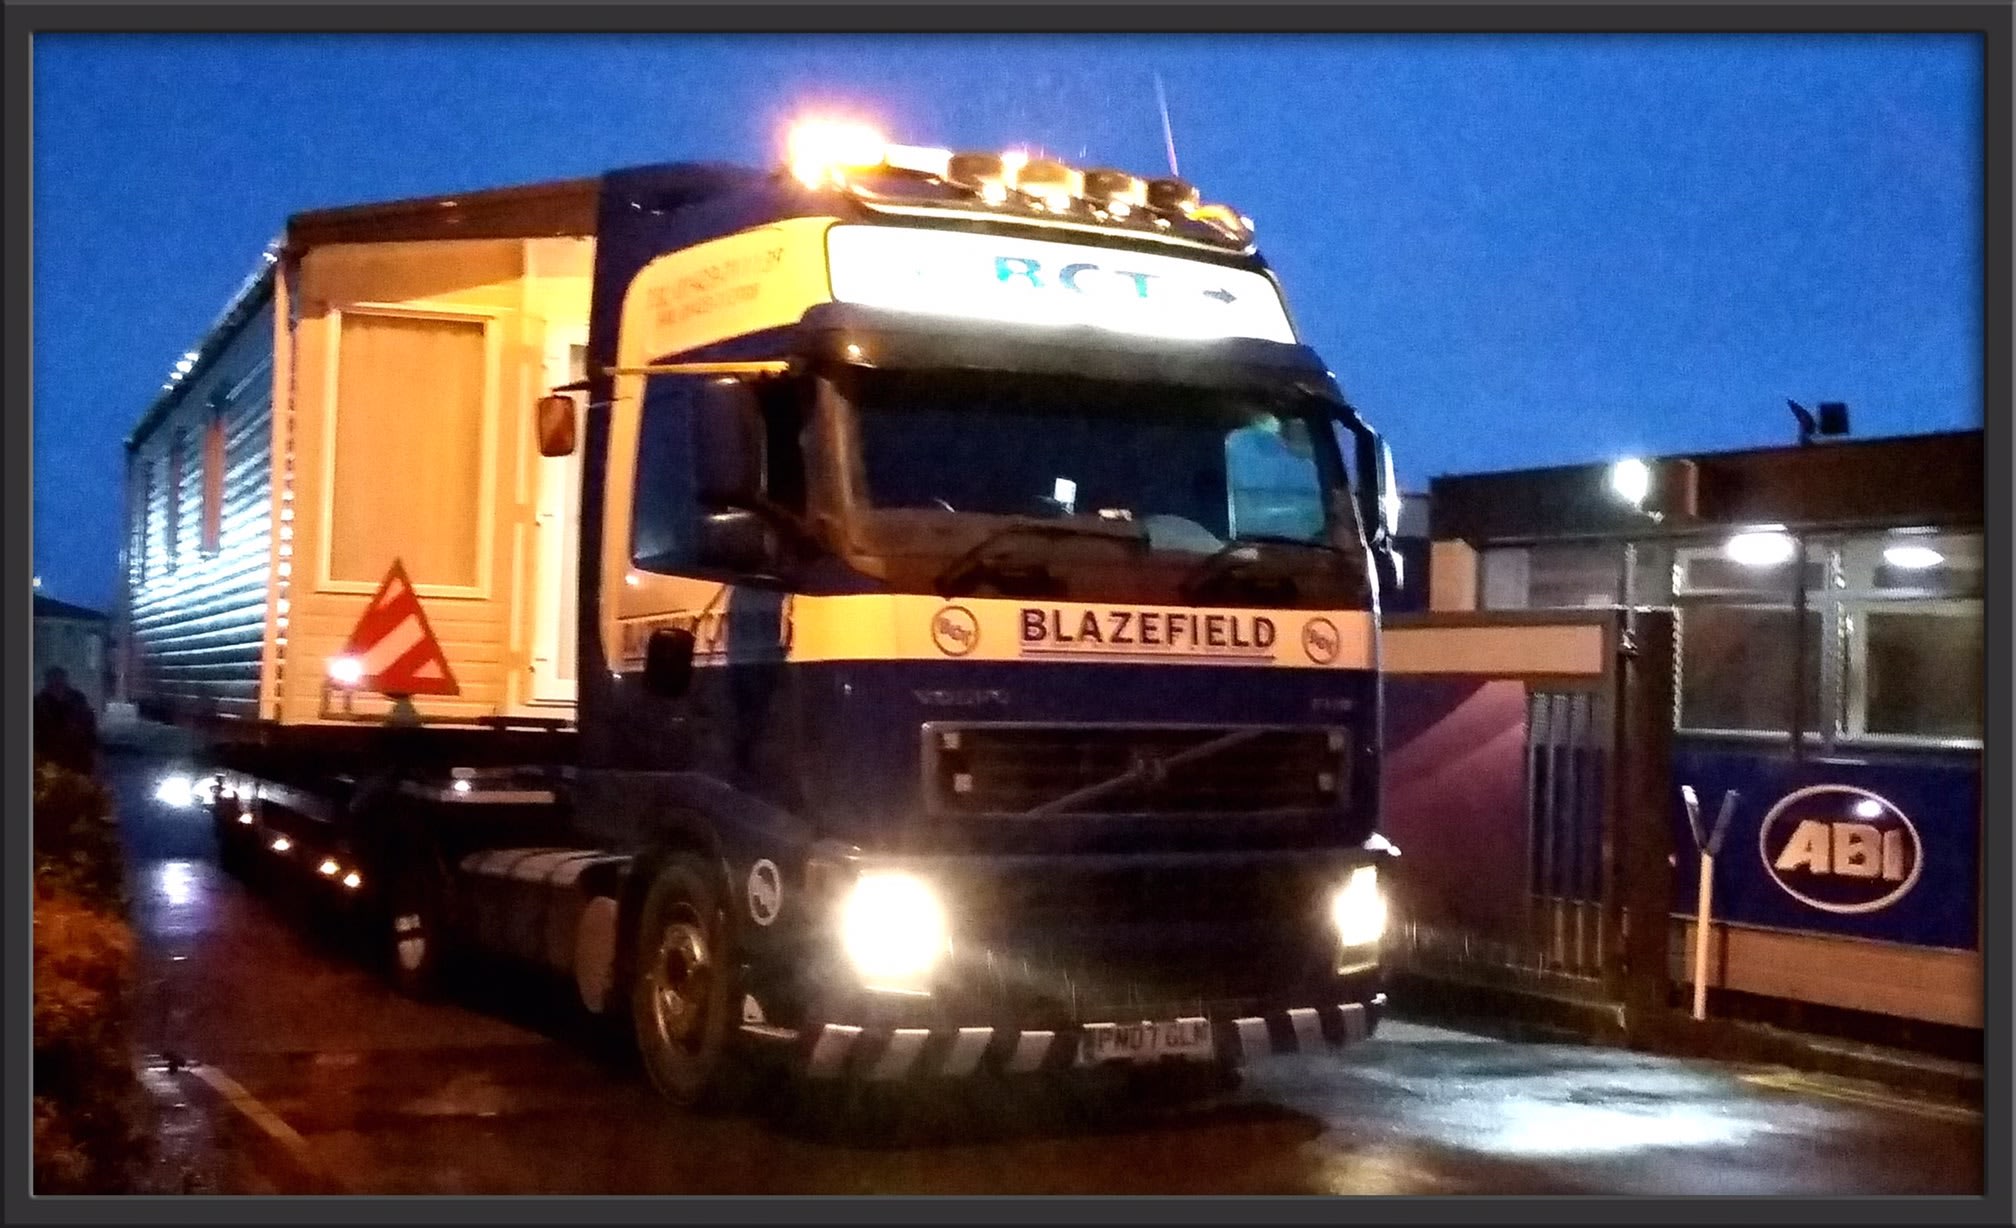 Blazefield Caravans Ltd Harrogate 01423 711139